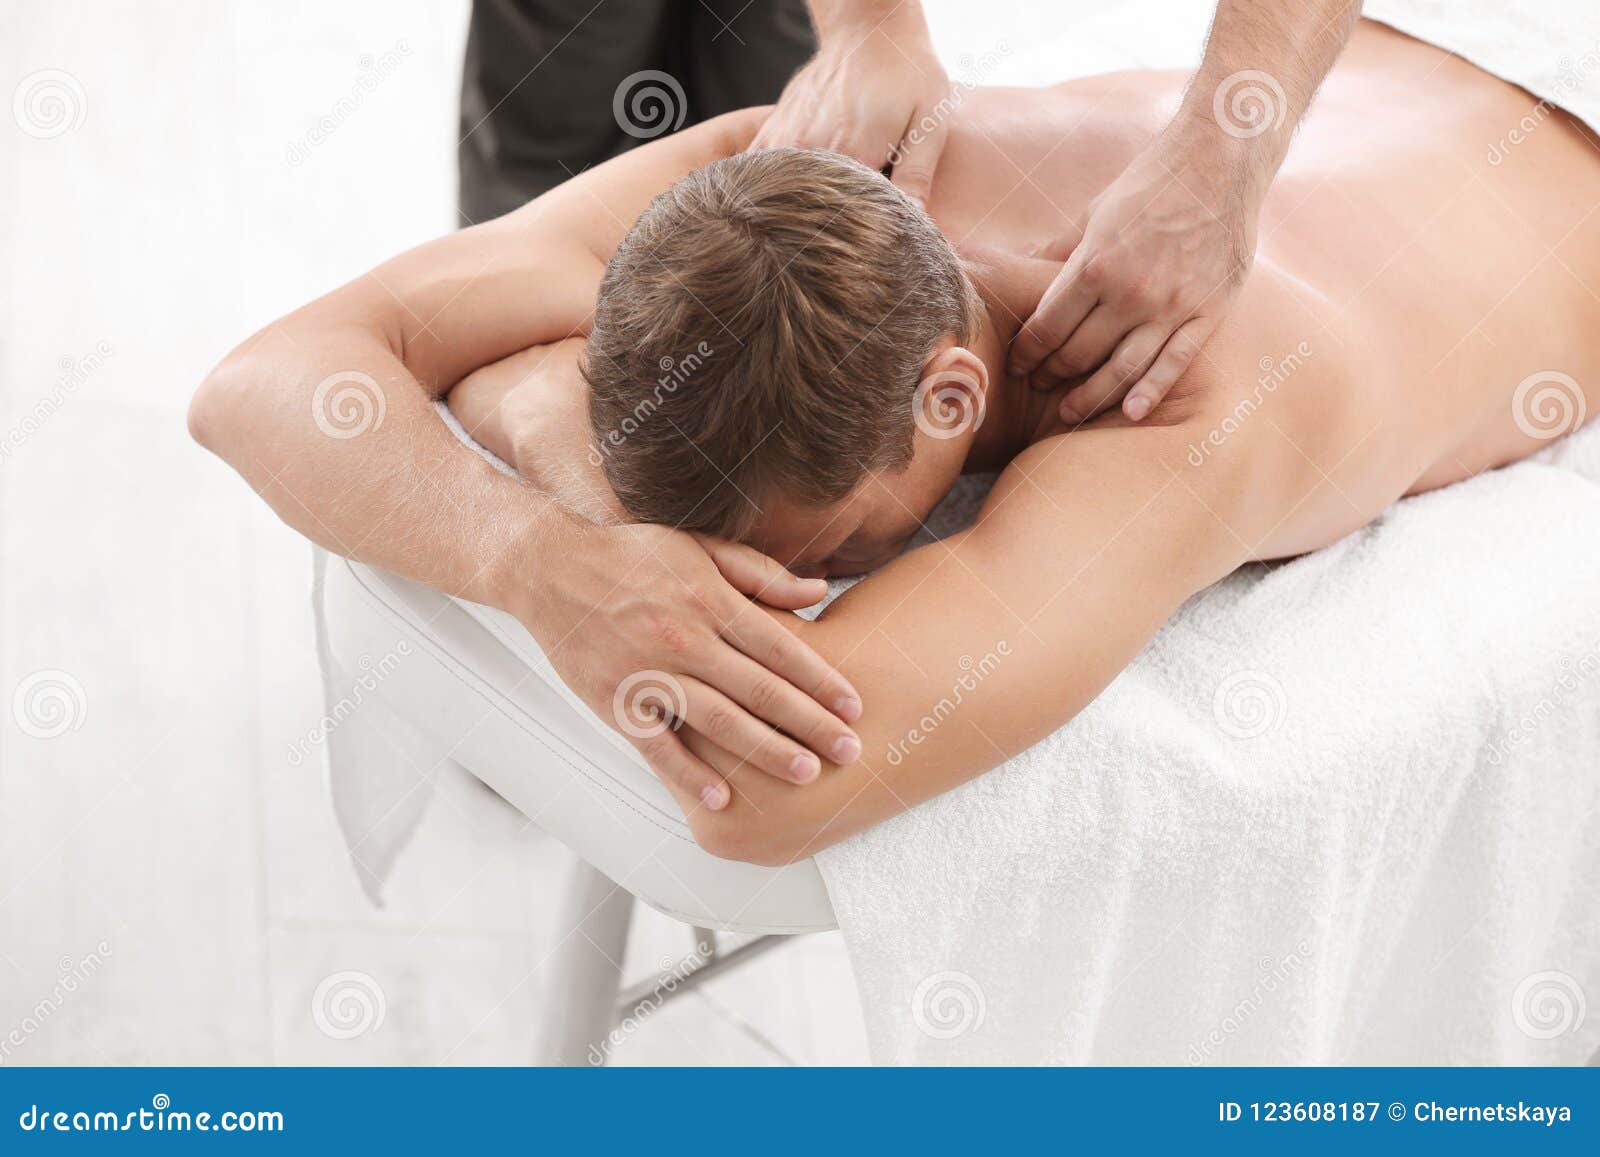 Астрахань расслабляющий для мужчин. Ручной расслабления мужчина. Массаж спины расслабляющий для мужчин. Массаж для спины мужчине расслабляющий мужчин. Массаж спины расслабляющий для мужчин в домашних условиях.